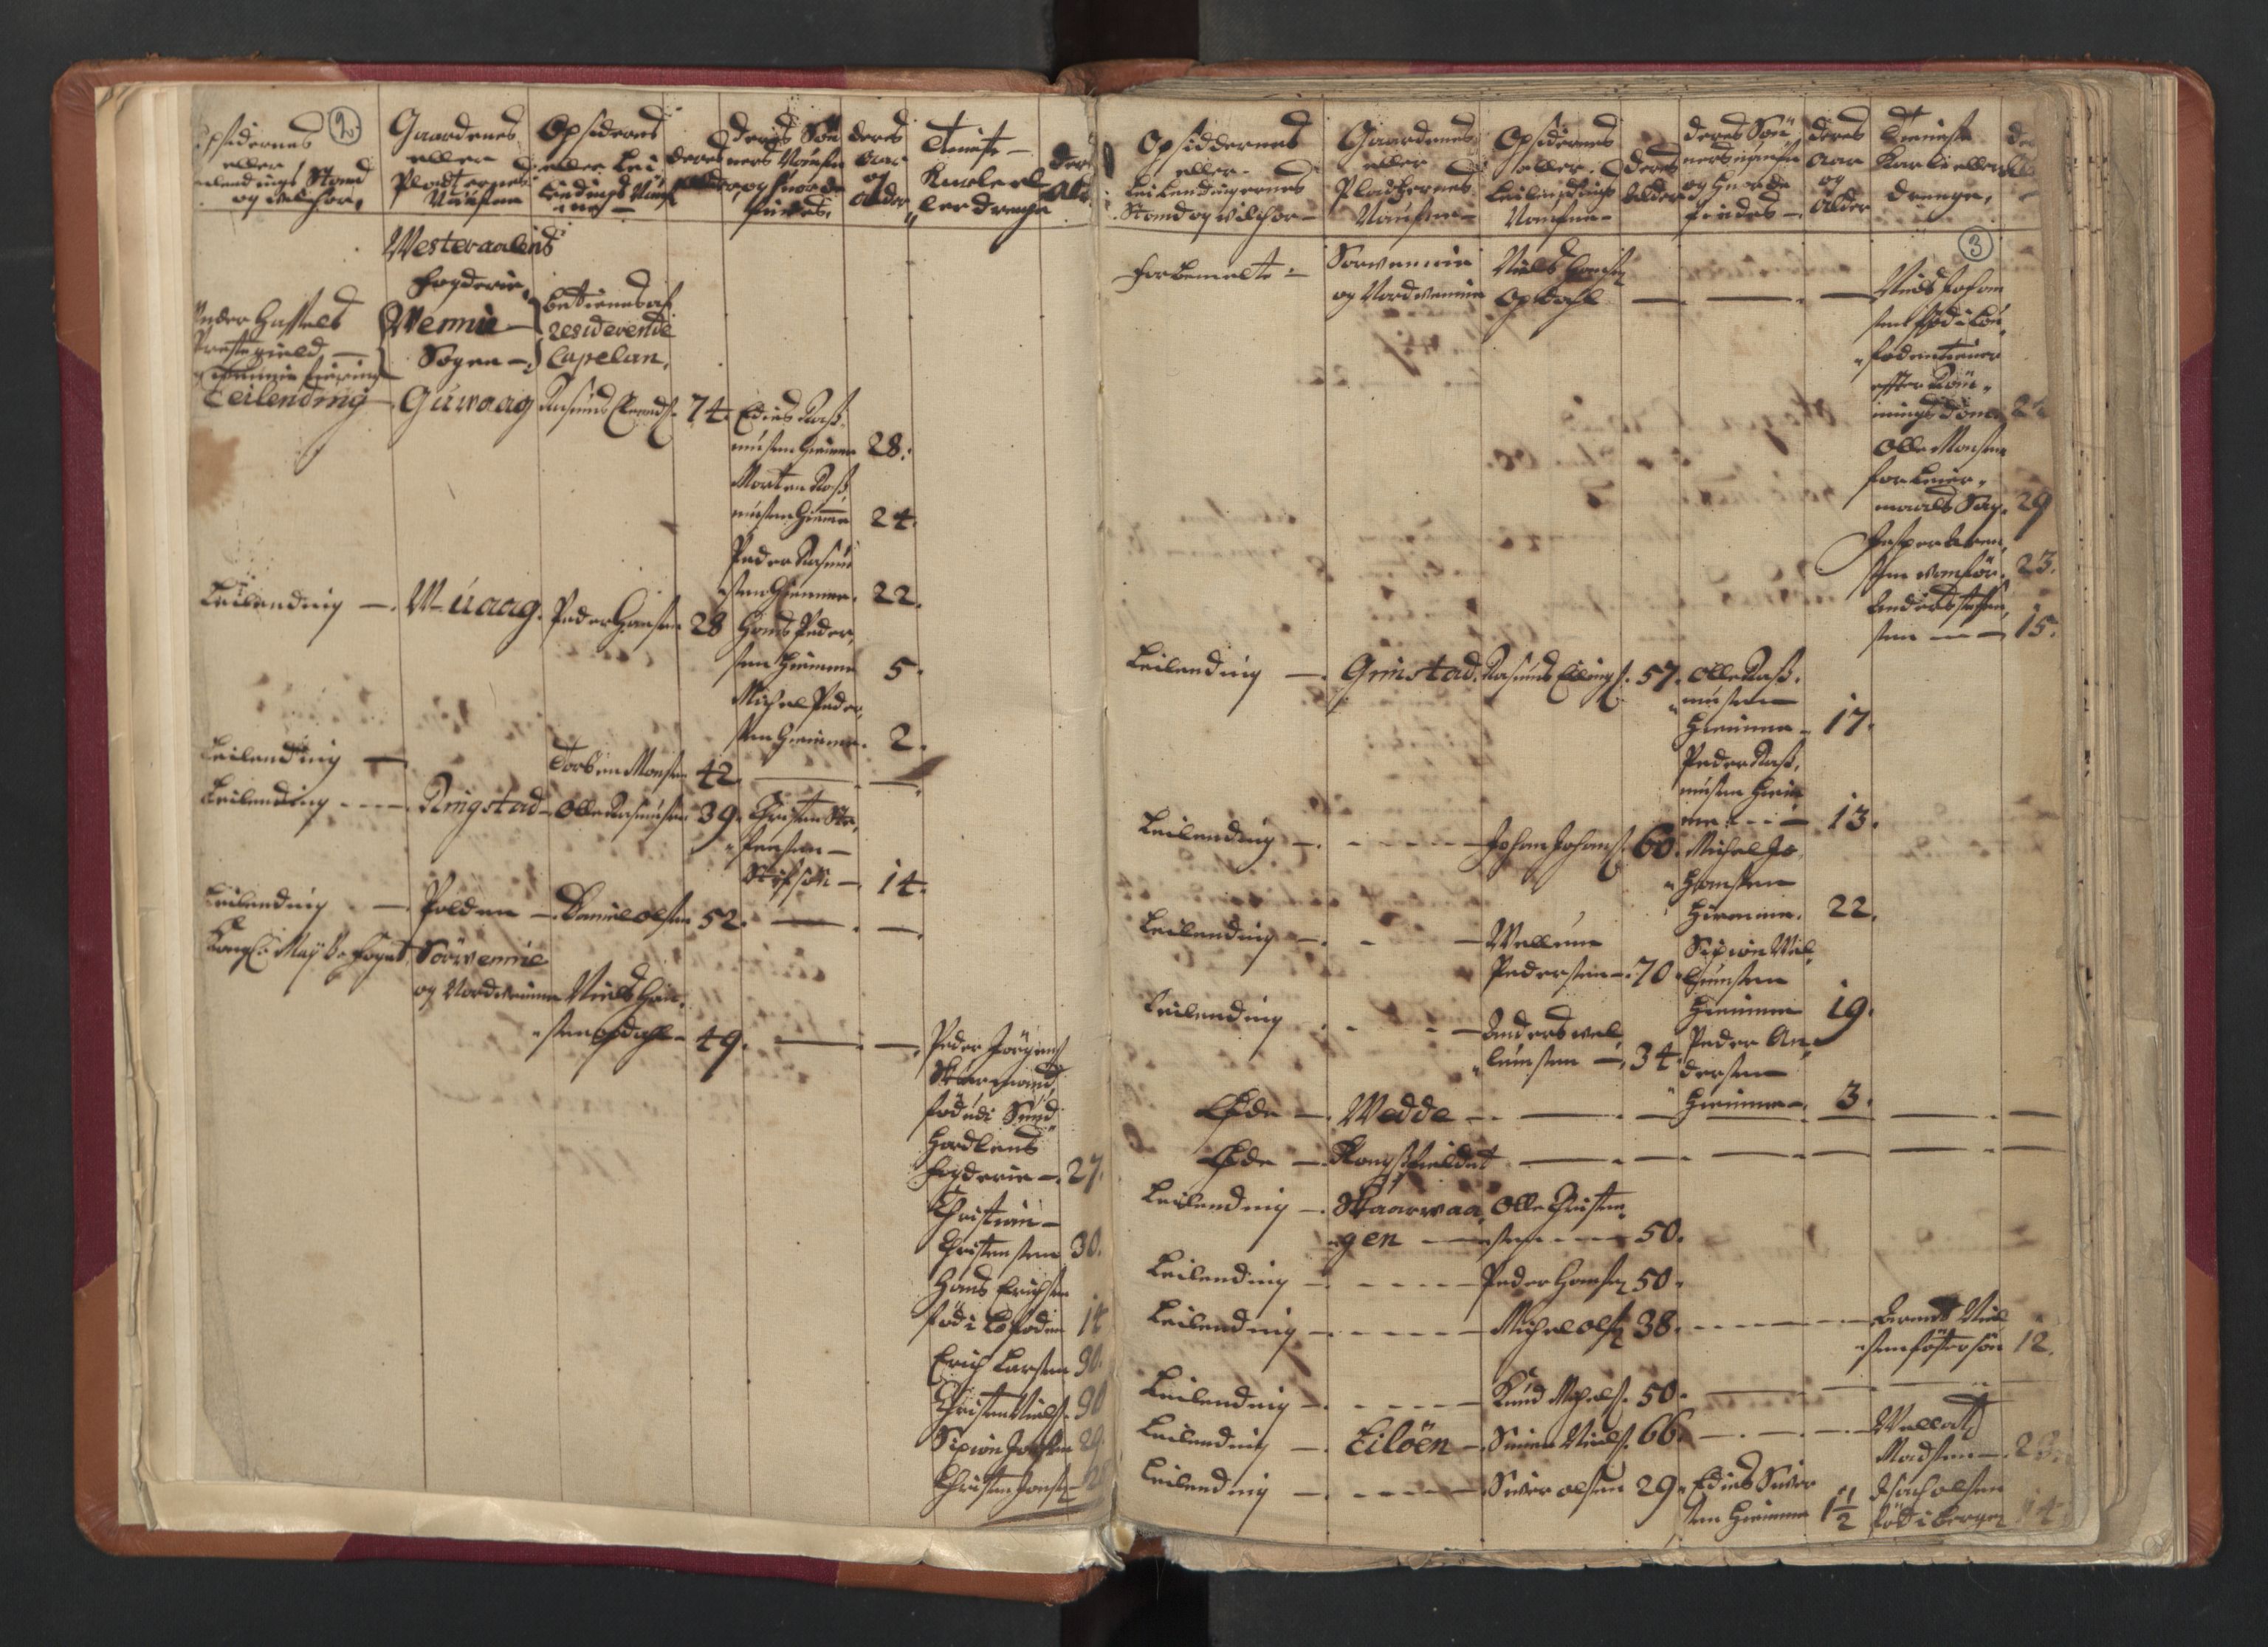 RA, Census (manntall) 1701, no. 18: Vesterålen, Andenes and Lofoten fogderi, 1701, p. 2-3